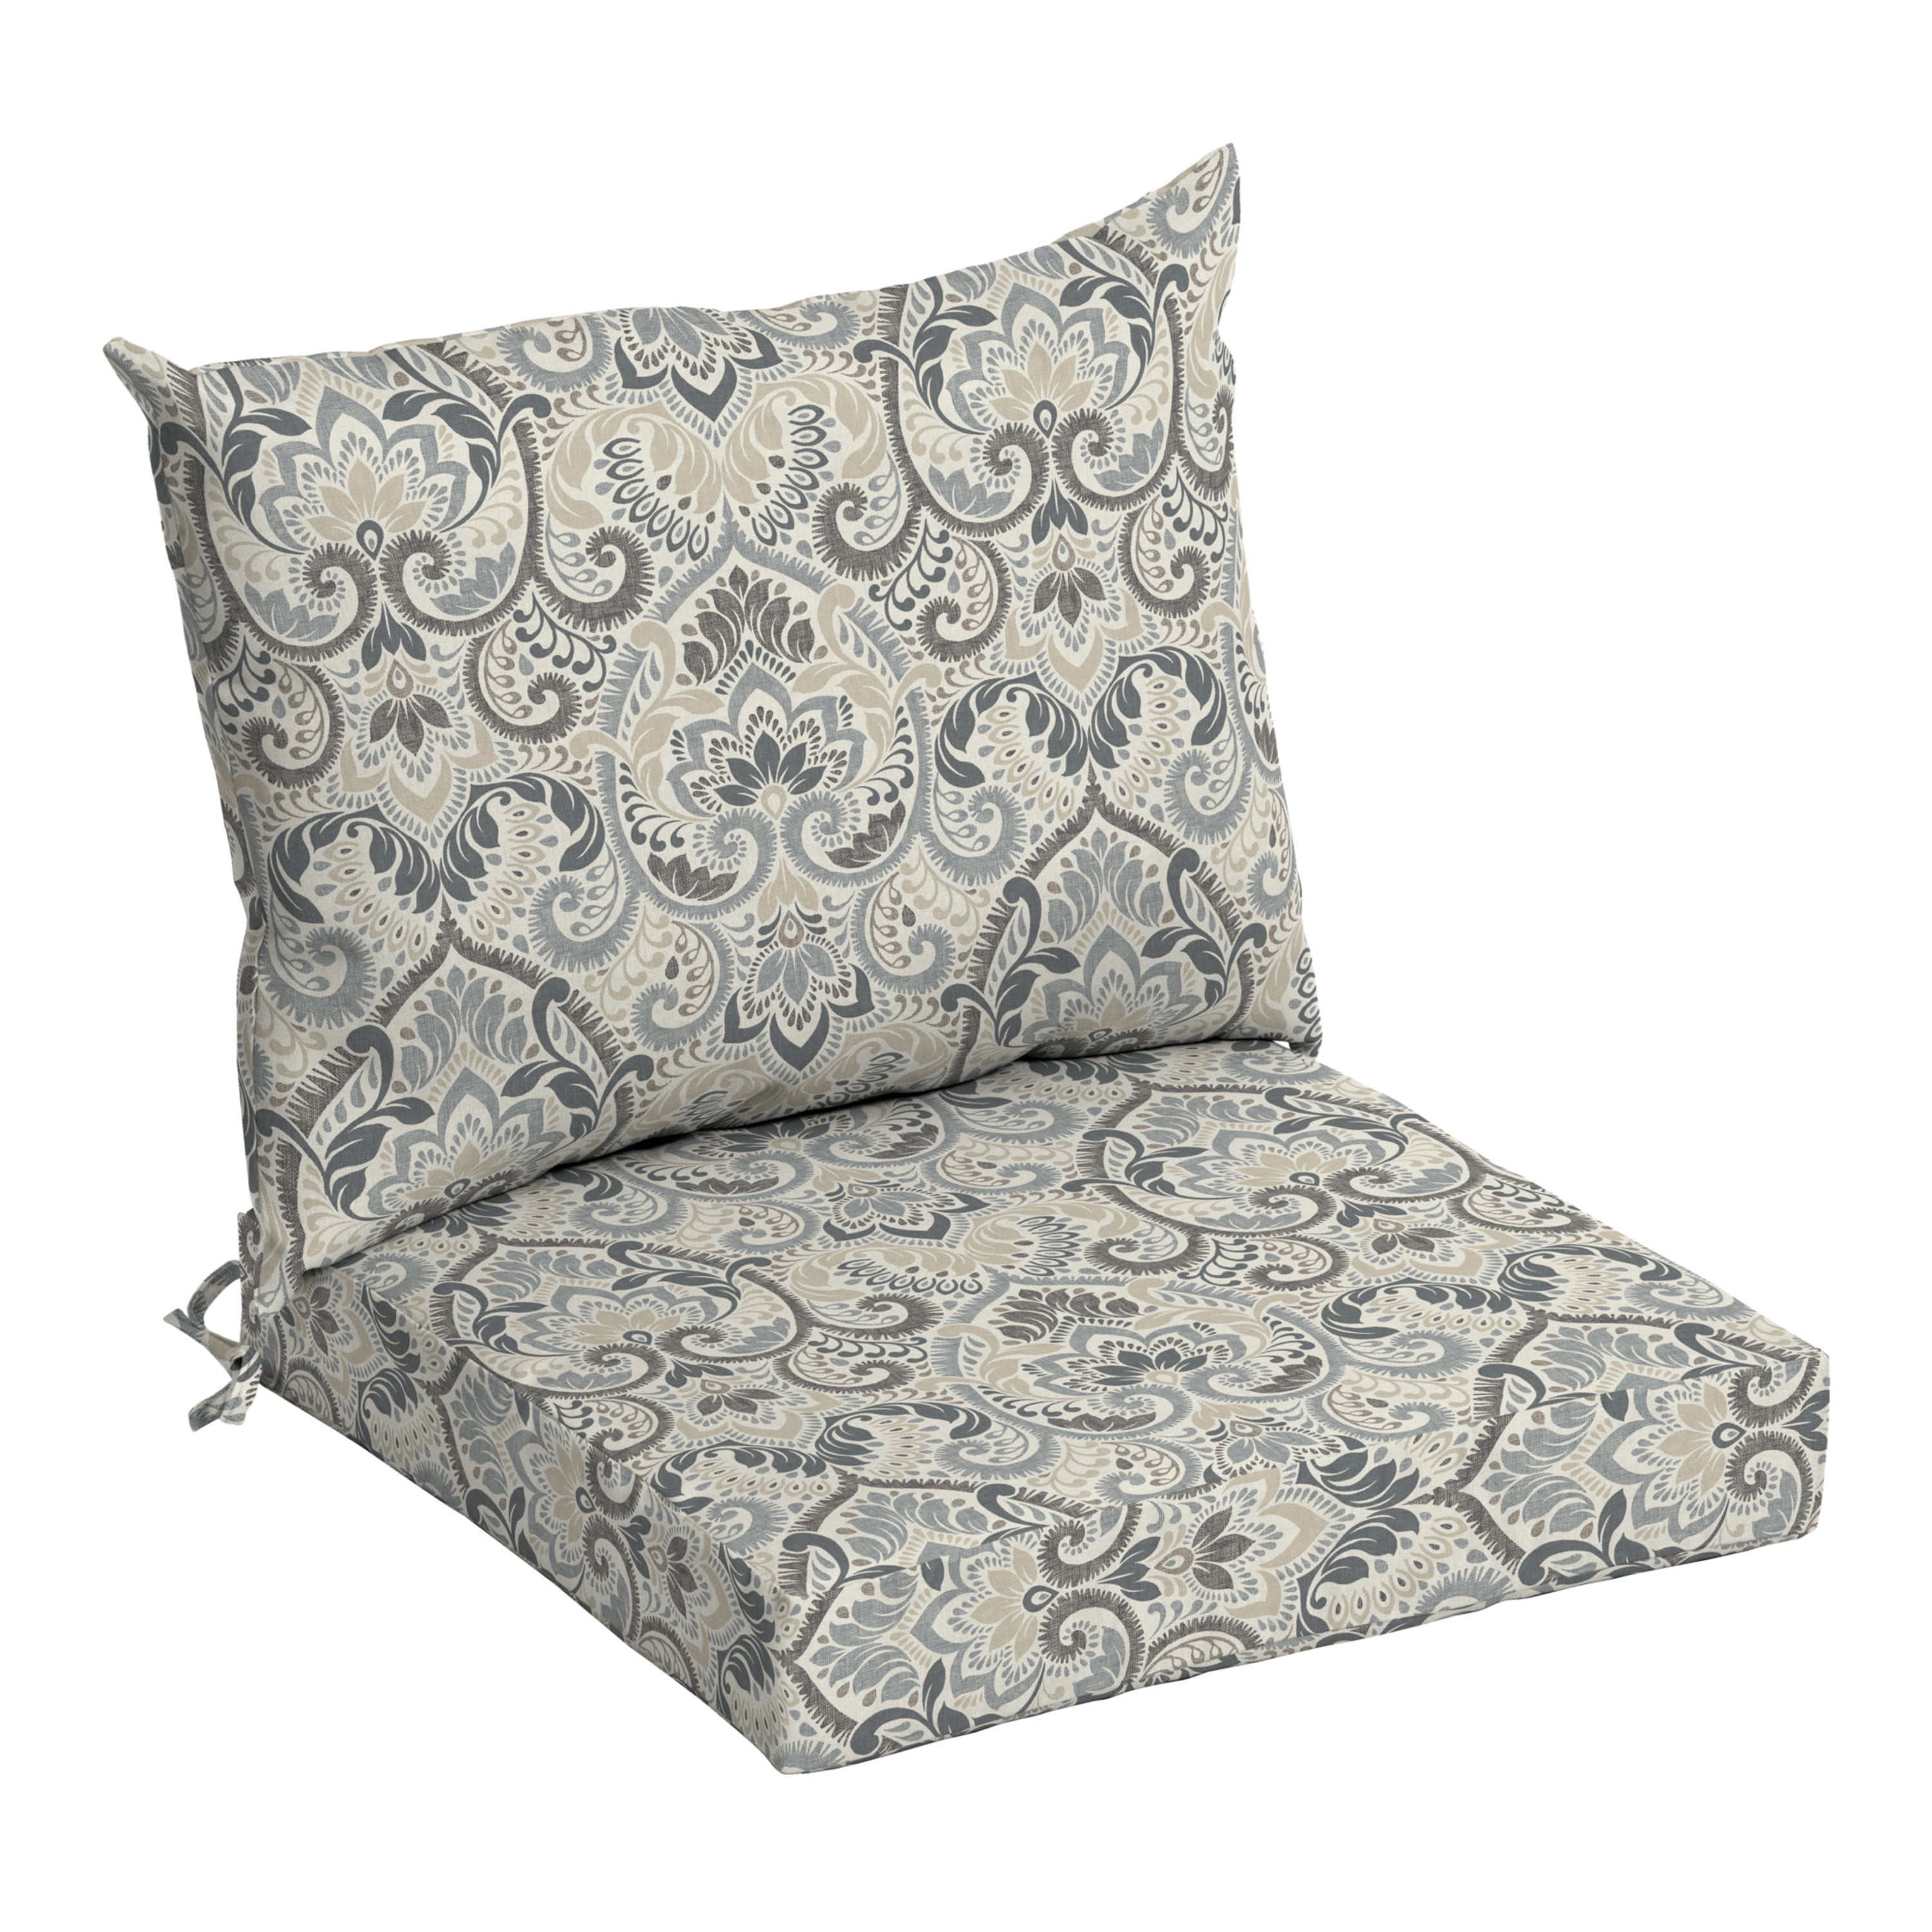 Cushion Chair – Northdeco